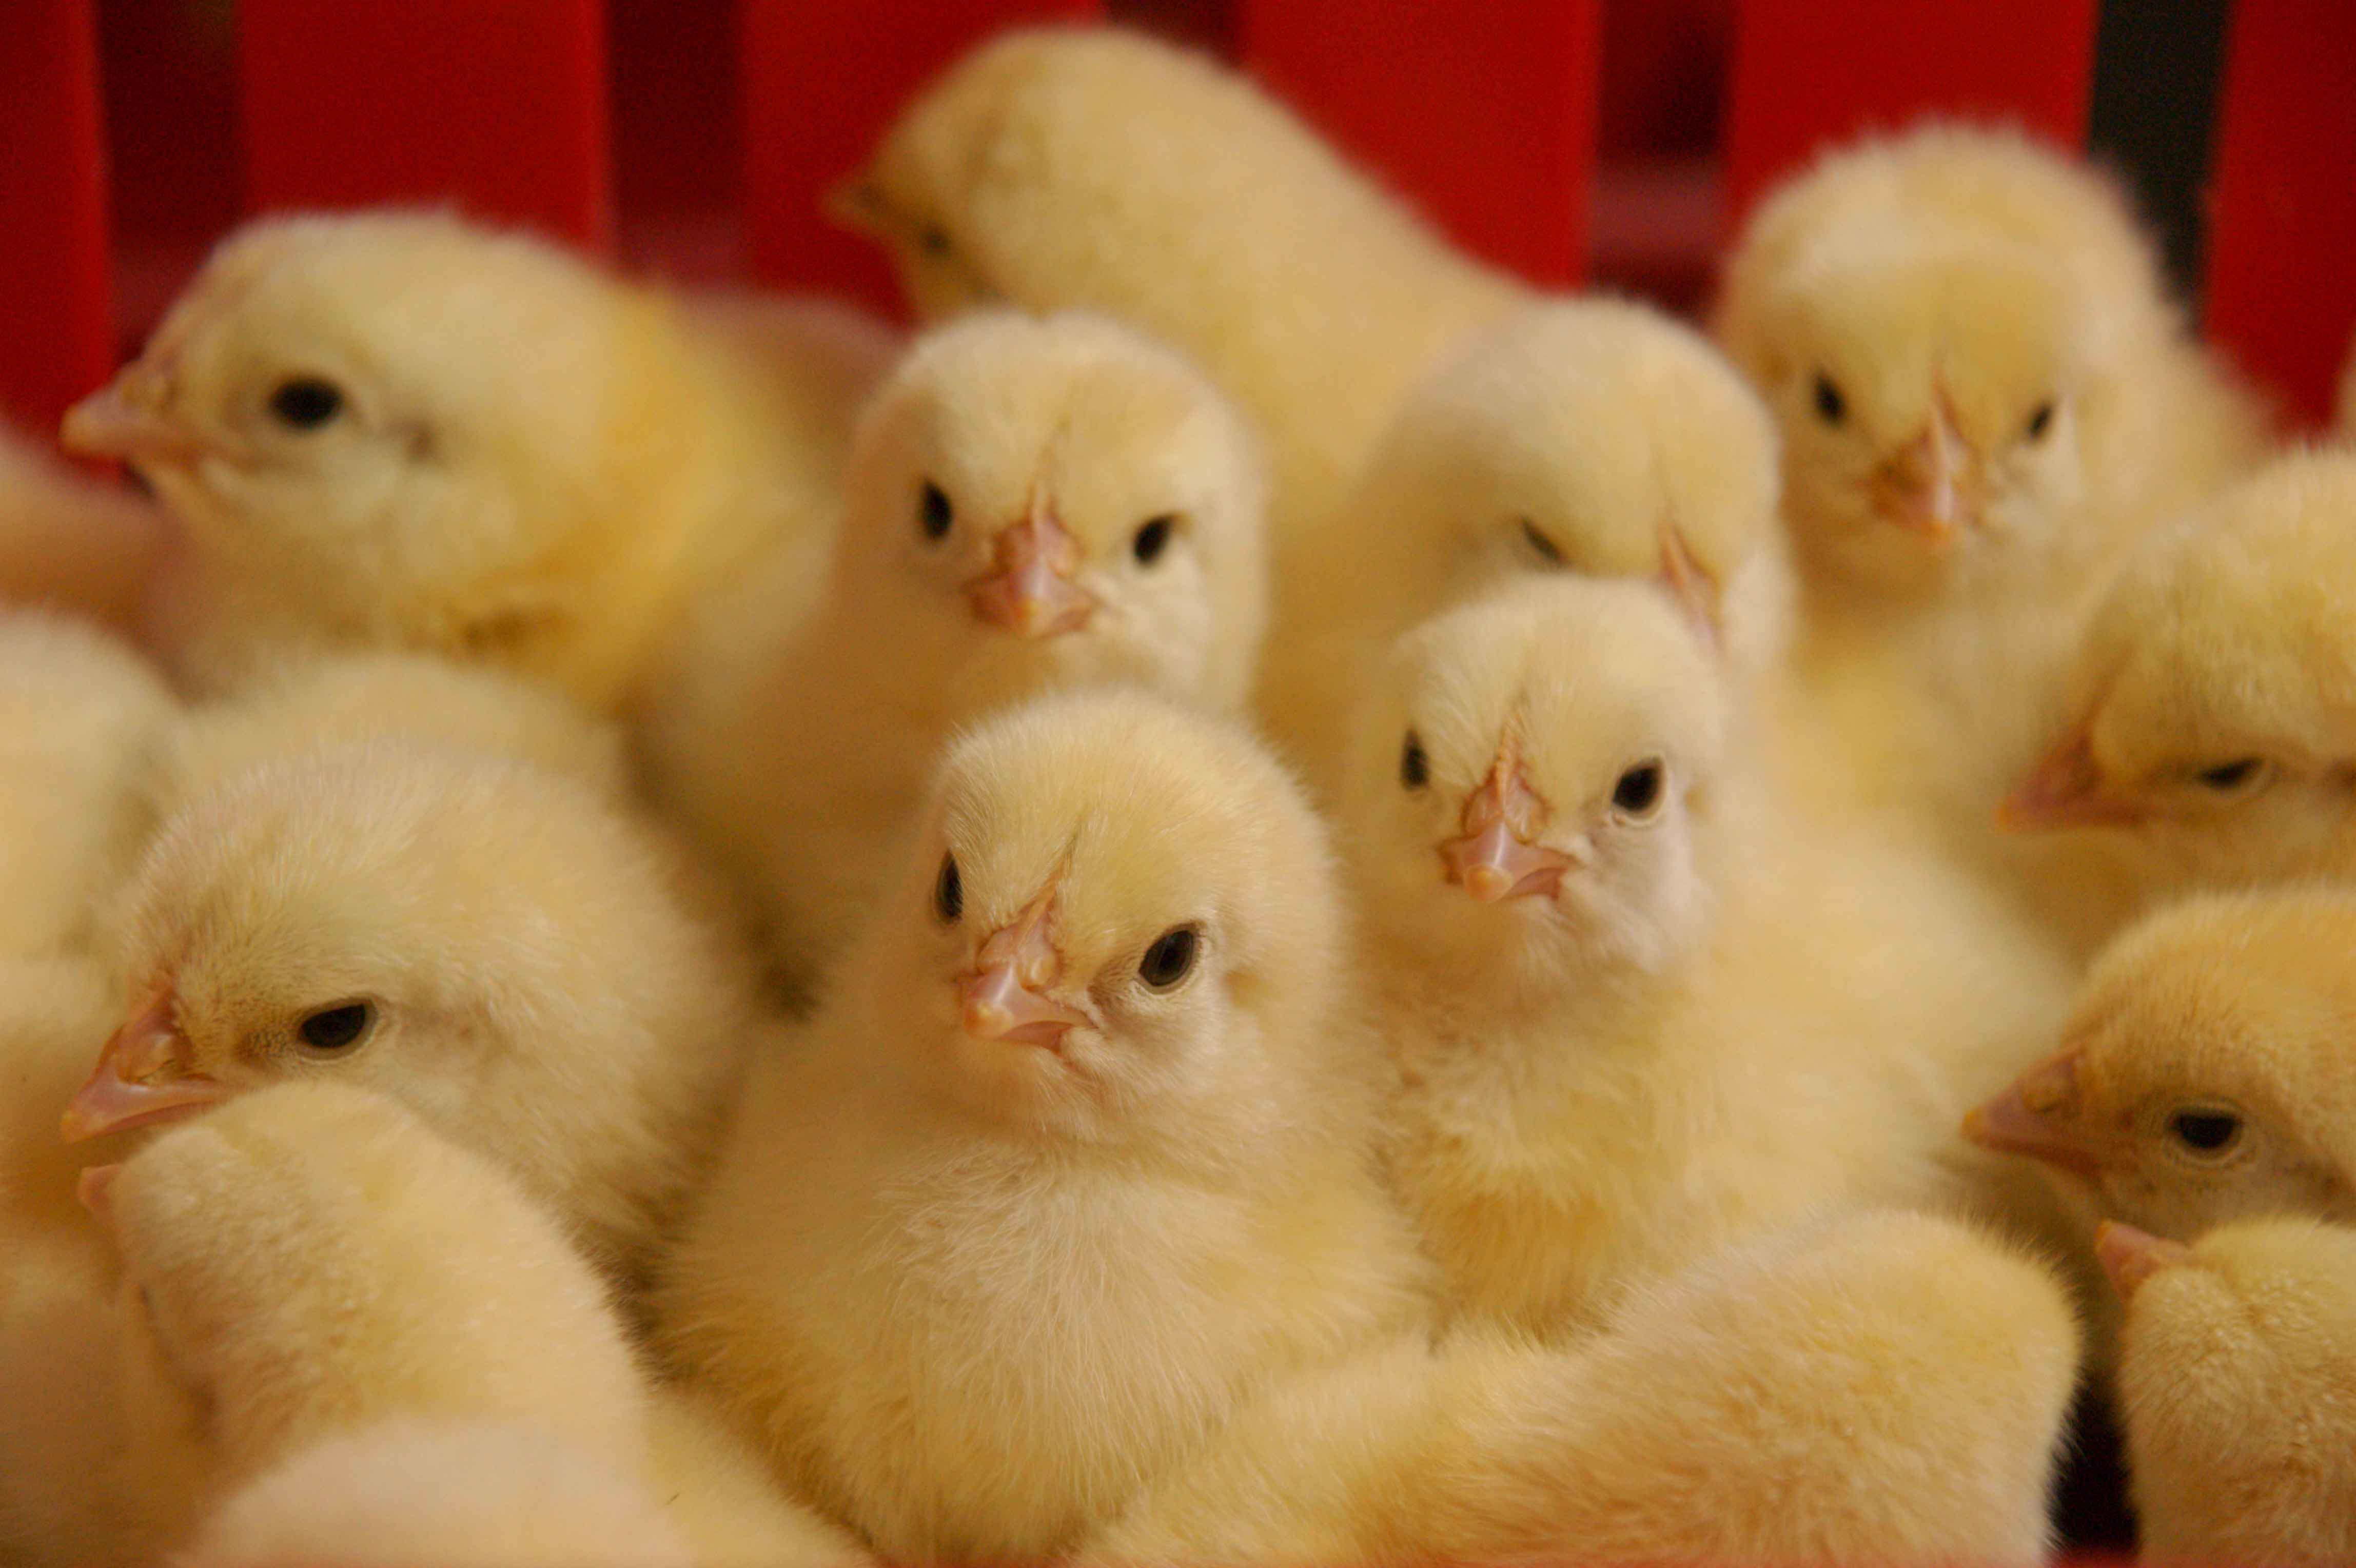 آرتا جوجه سبلان : یکی از تولیدکنندگان مرغ در خاورمیانه